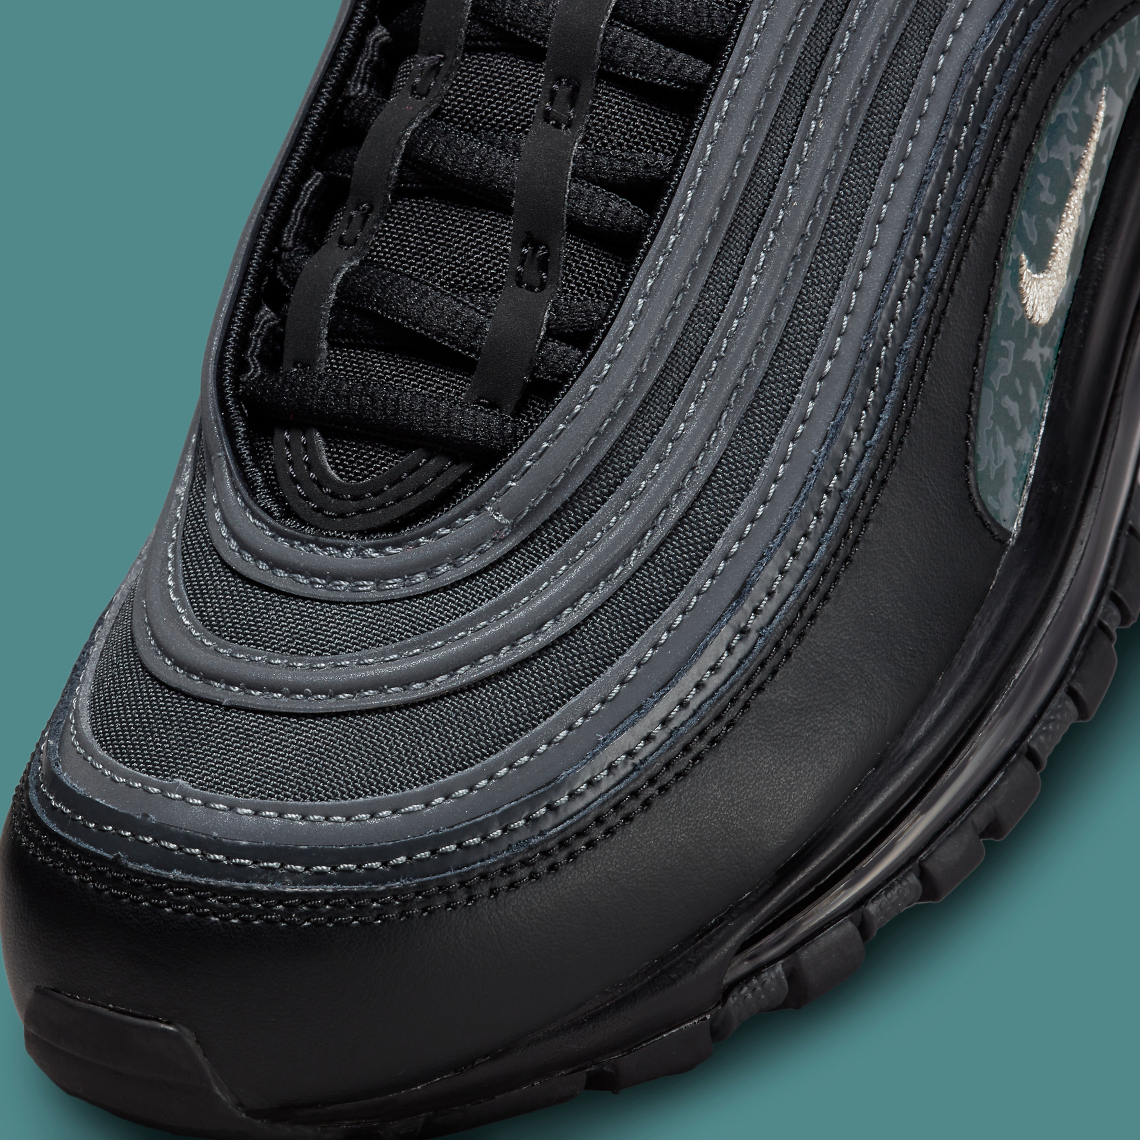 salario Muchas situaciones peligrosas Regulación Nike Air Max 97 Black Emerald Green DH0558-001 | SneakerNews.com